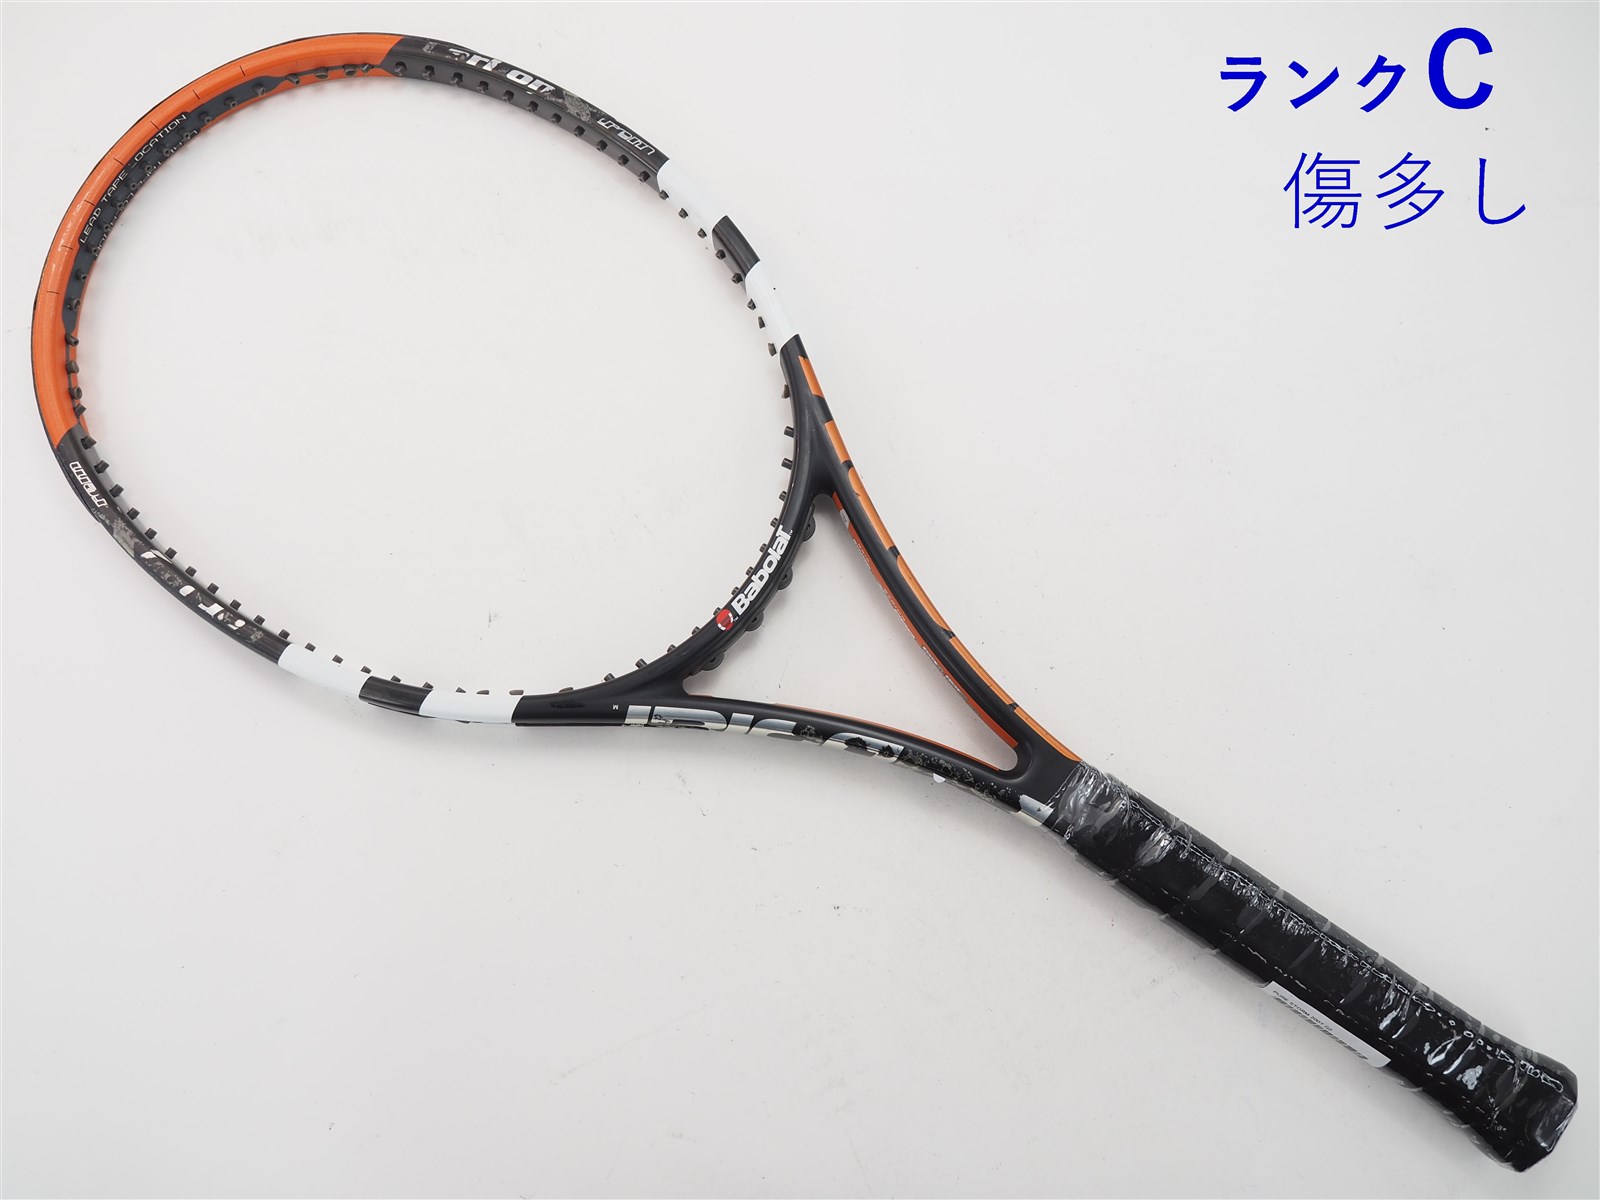 テニスラケット バボラ ピュア ストーム 2007年モデル (G3)BABOLAT PURE STORM 2007